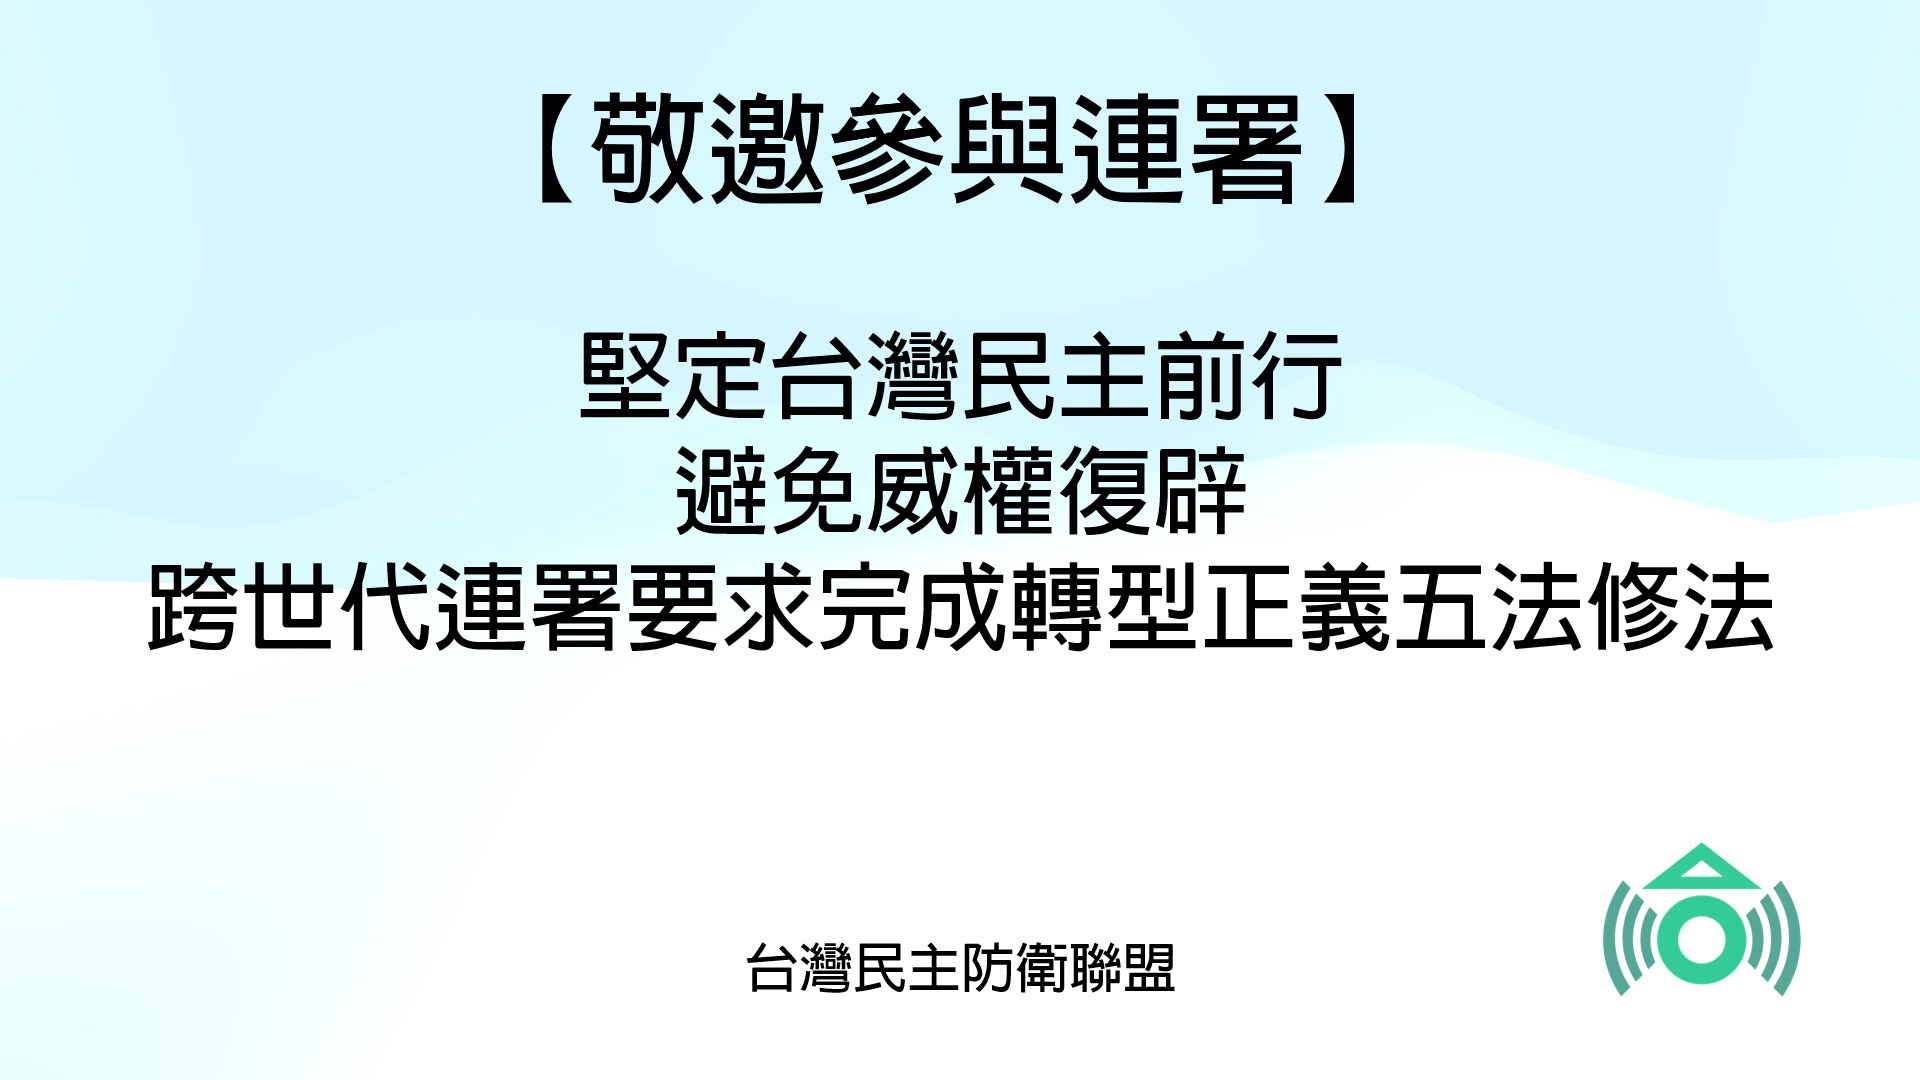 連署】 堅定台灣民主前行避免威權復辟跨世代連署要求完成轉型正義五法